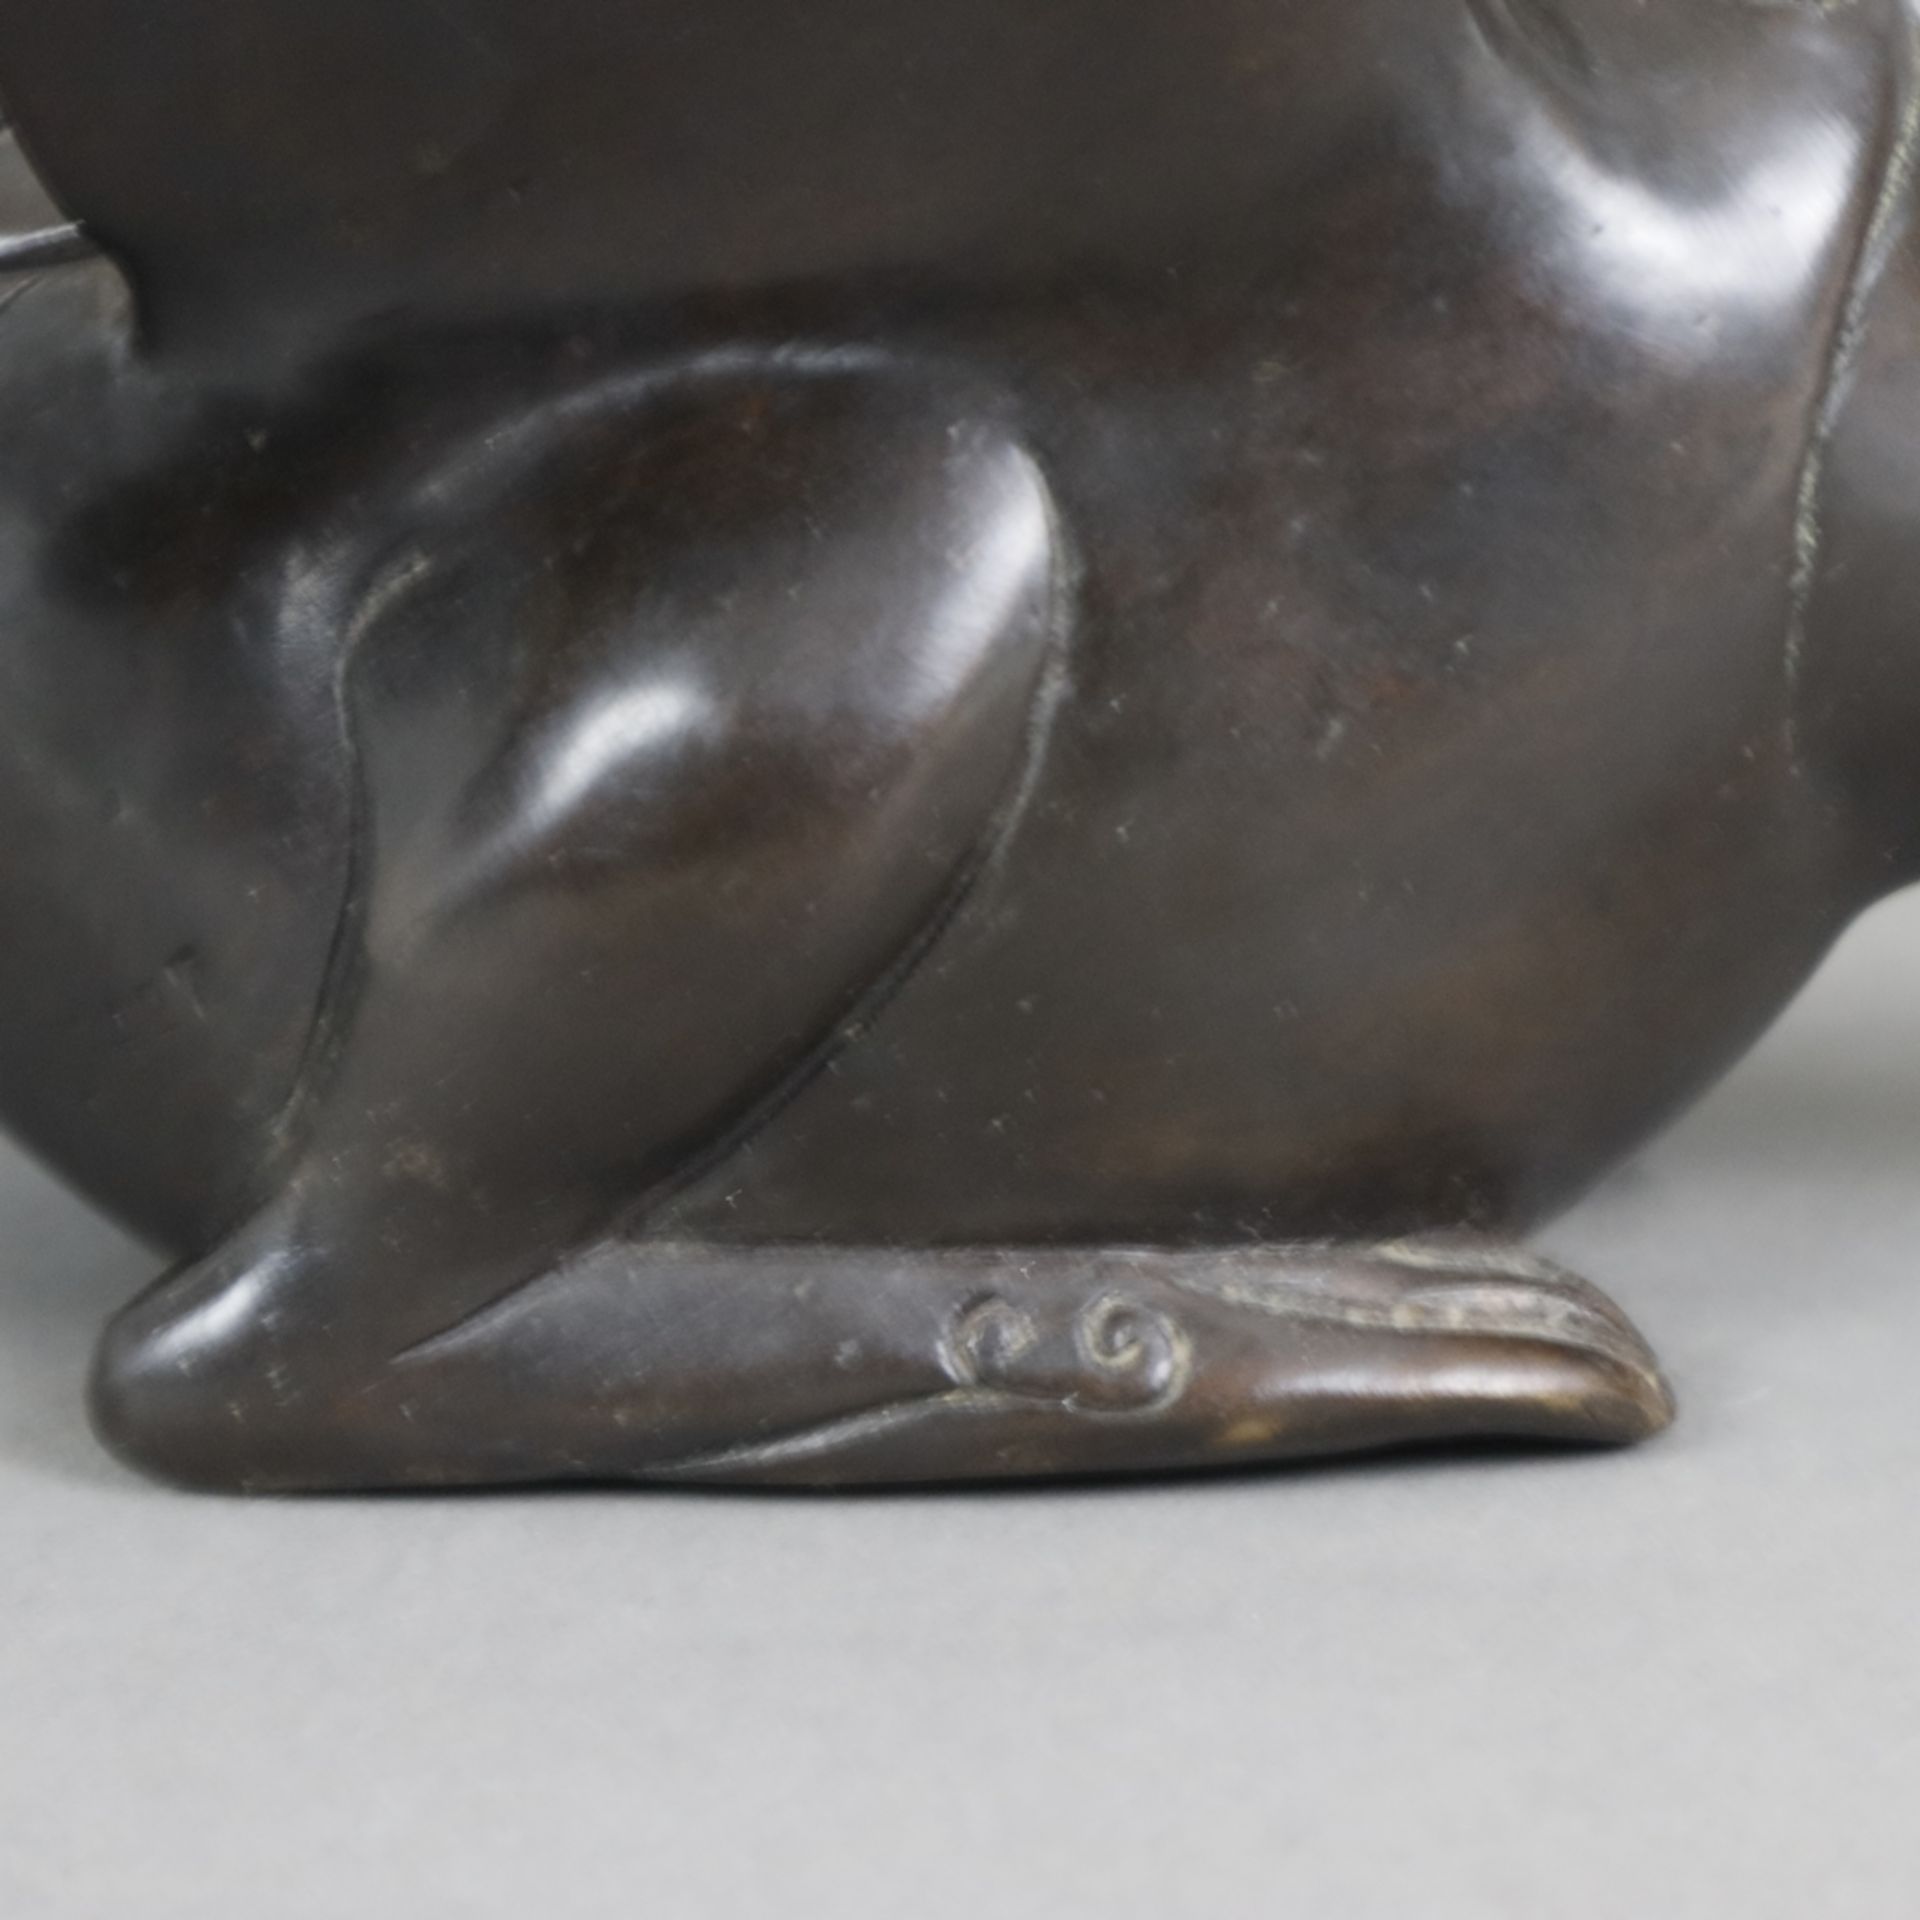 Tierfigur "Ente" - Messingguss, bronziert, unterseitig gestempelt "Santi's" mit Auflagenr. 11/5000, - Image 6 of 10